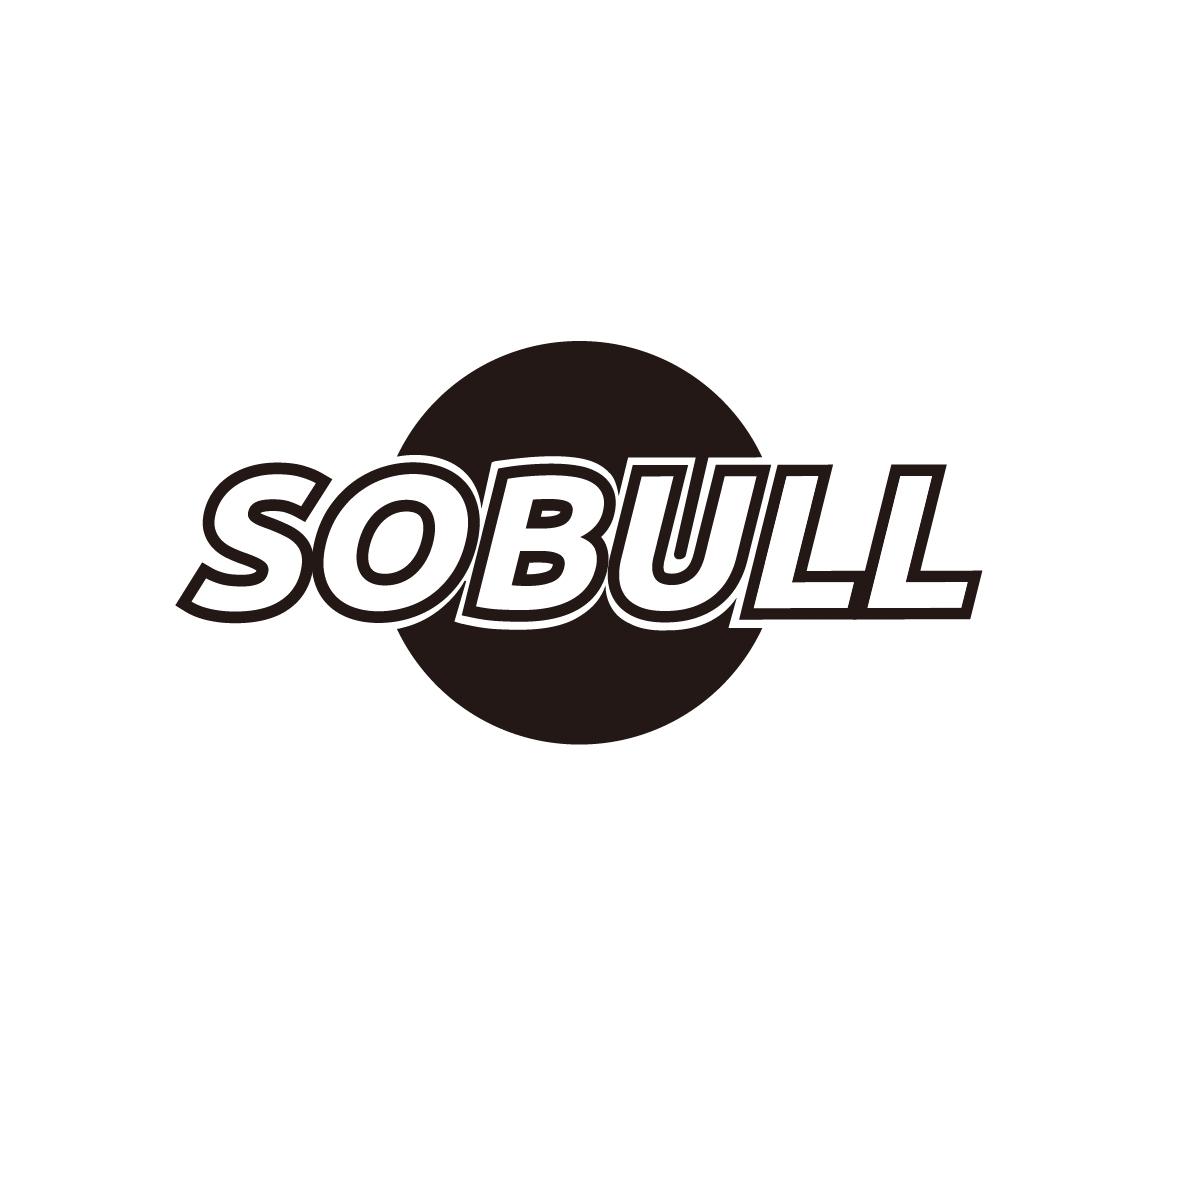 SOBULL